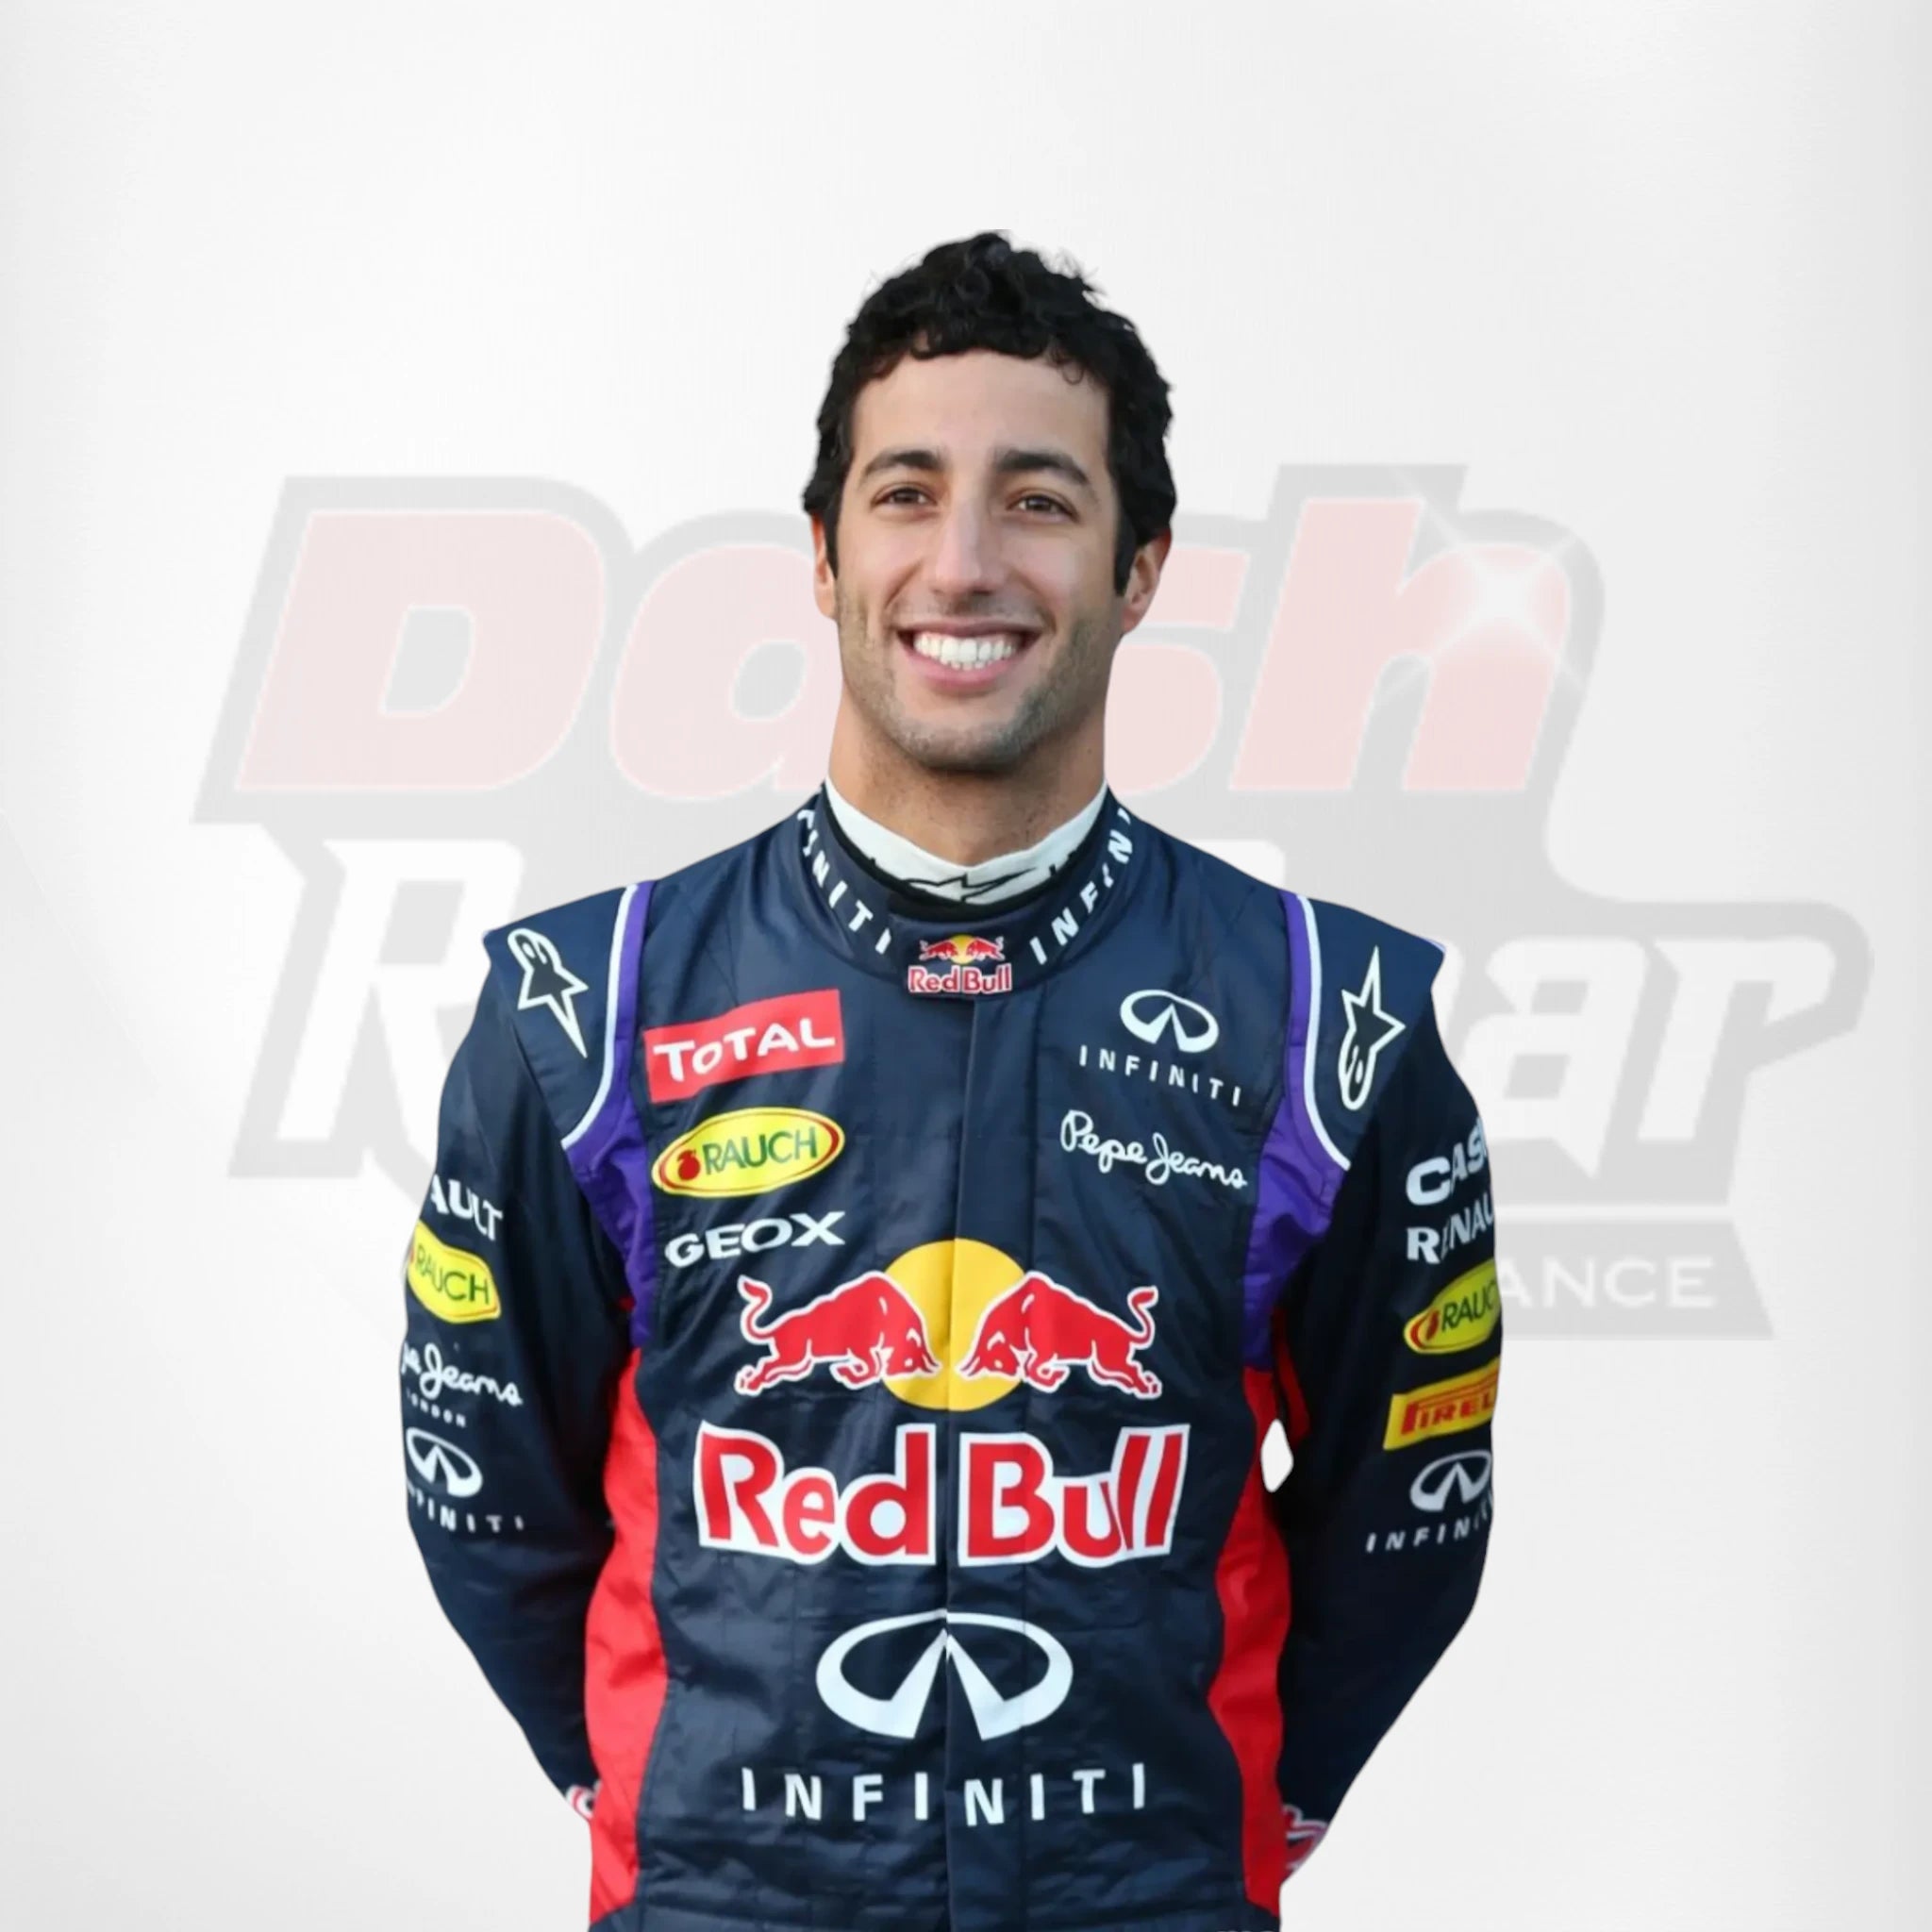 2015 Red Bull Daniel Ricciardo Infiniti F1 Race Suit